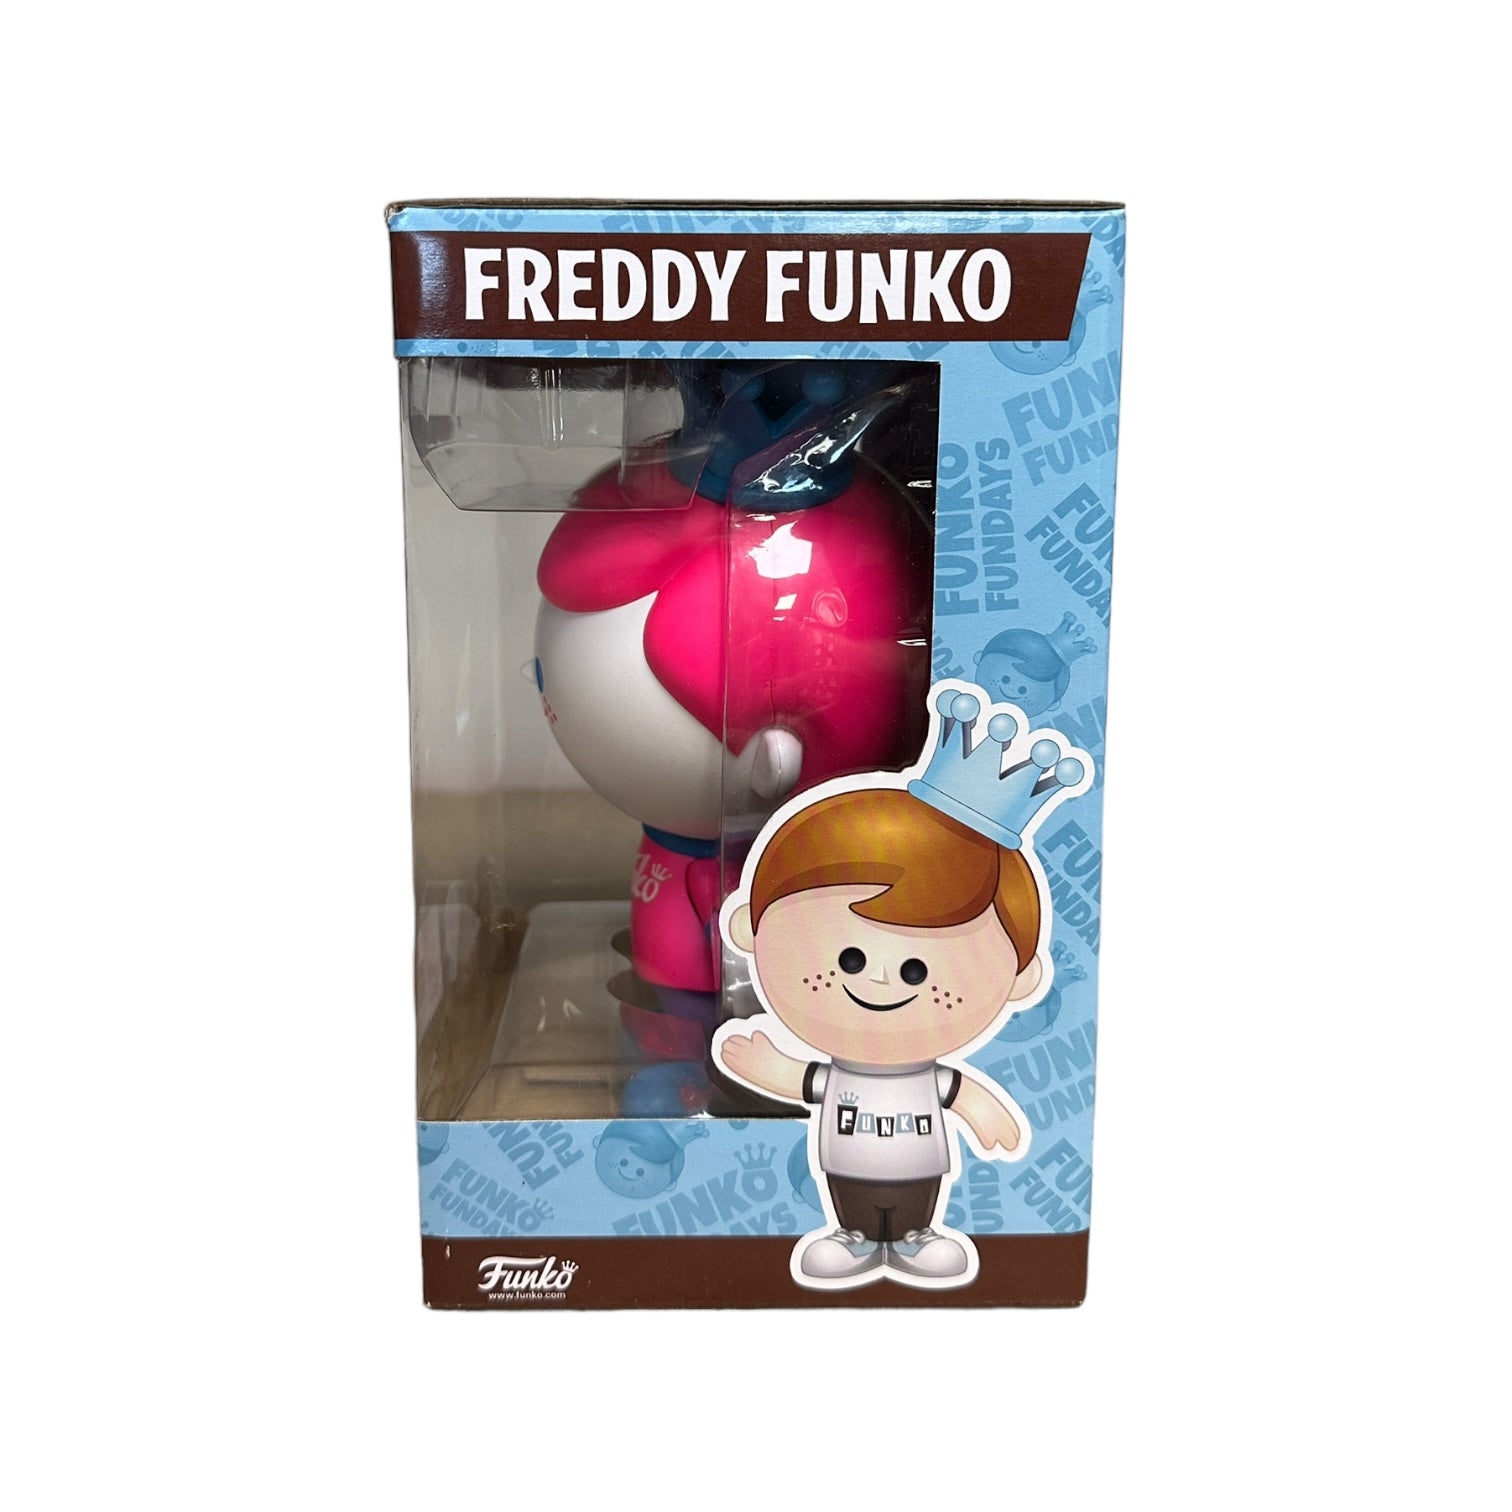 Freddy Funko Black Light (White & Pink) Funko Retro Vinyl Figure! - SDCC 2017 Exclusive LE100 Pcs - Condition 8/10